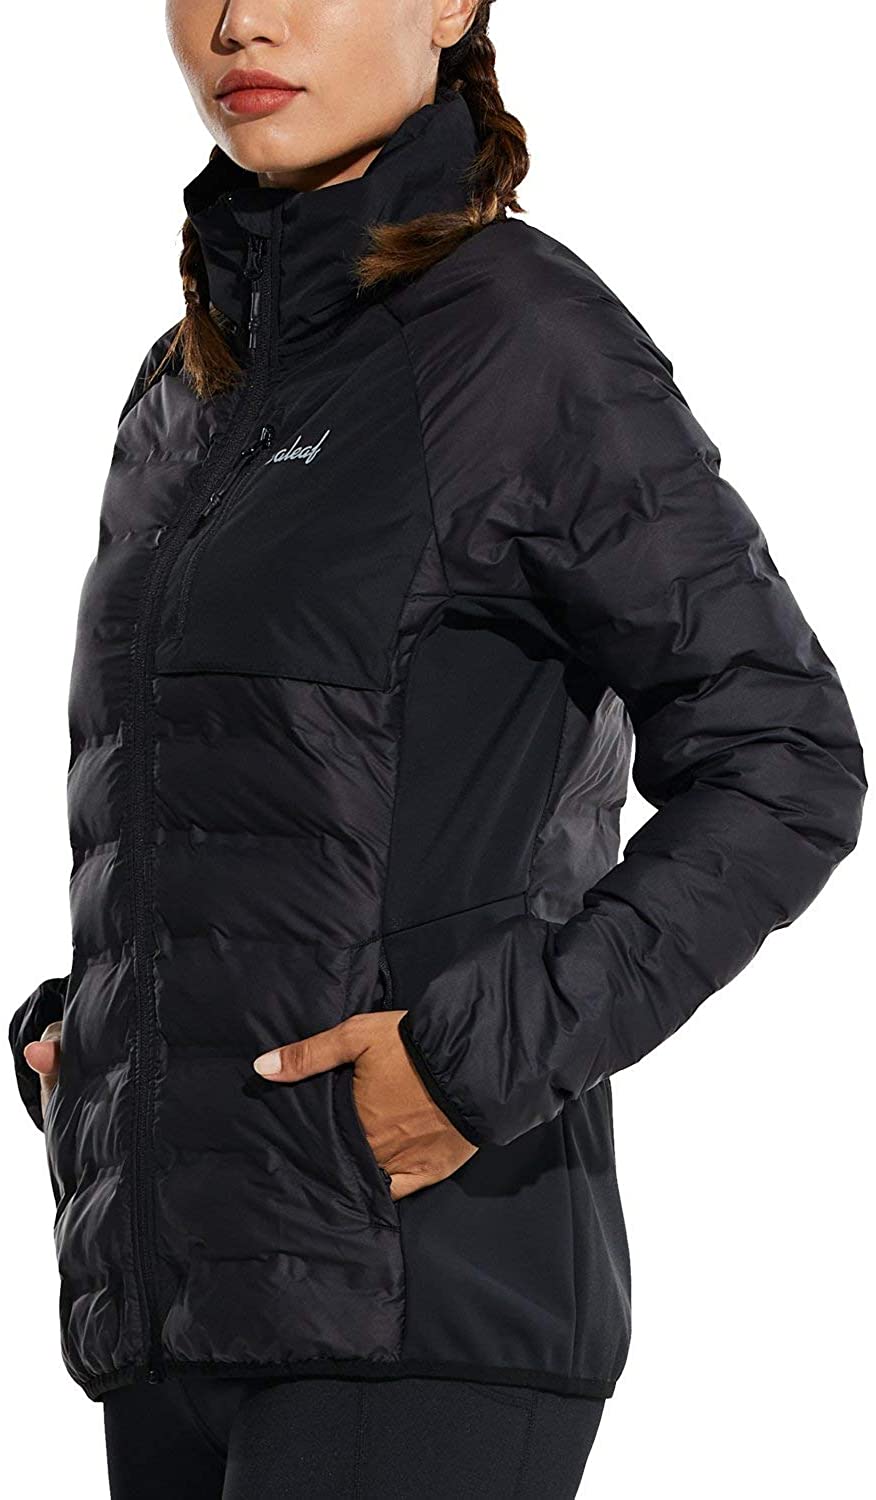 BALEAF Women's Ultra Lightweight Full-Zip Warm Quilted Puffer Jacket ...